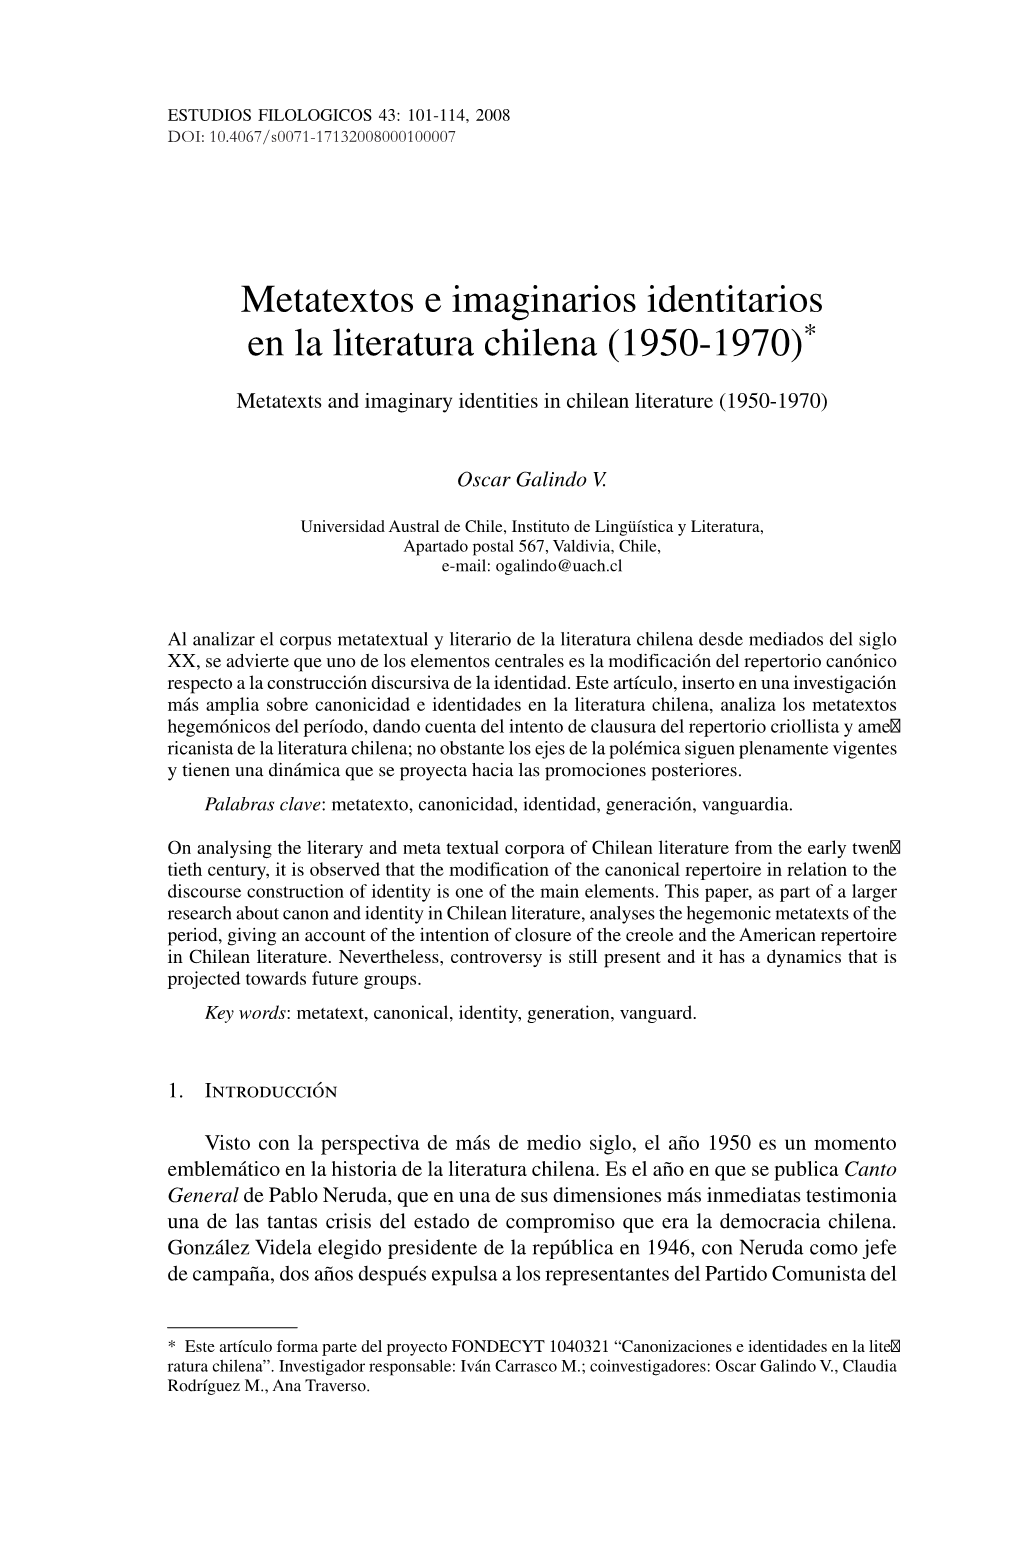 Metatextos E Imaginarios Identitarios En La Literatura Chilena (1950-1970)*